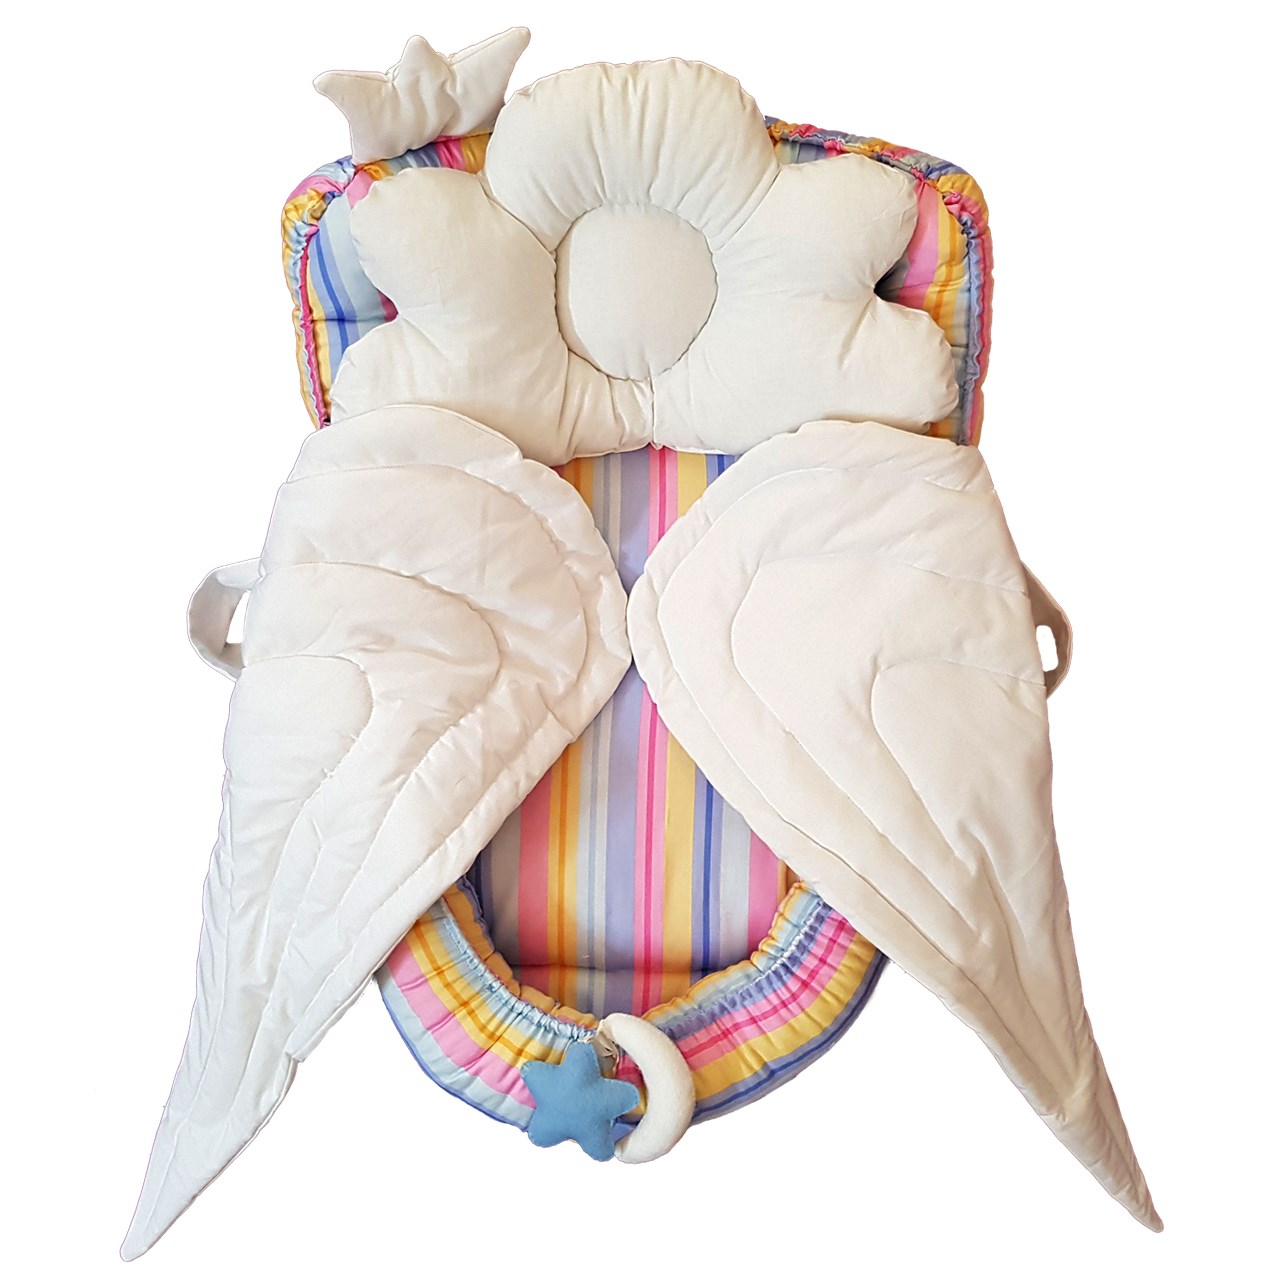 سرویس 2 تکه خواب نوزادی تاپ دوزانی مدل فرشته رنگین کمان